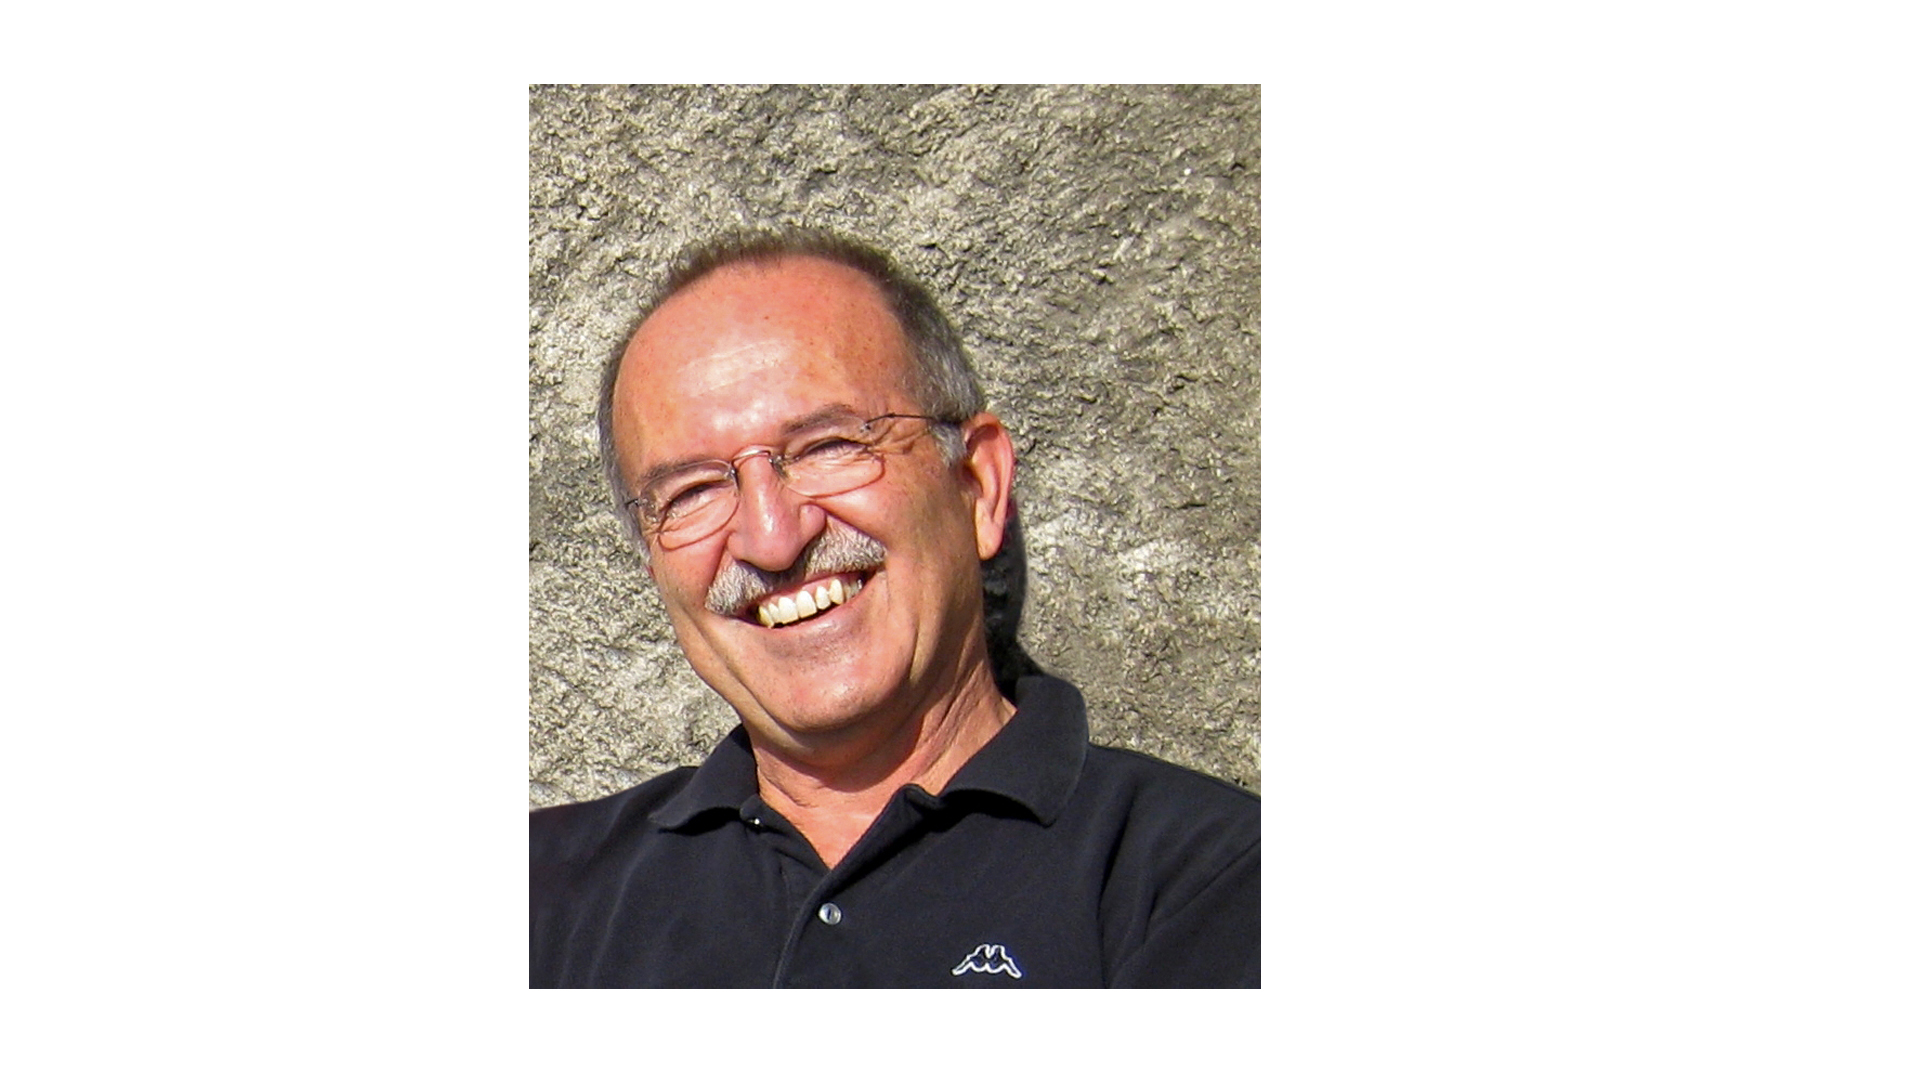 Dr. Stephan Russ-Mohl, geboren 1950, ist Professor für Journalistik und Medienmanagement an der Università della Svizzera italiana in Lugano. Zudem ist er Direktor des Europäischen Journalismus-Observatoriums.